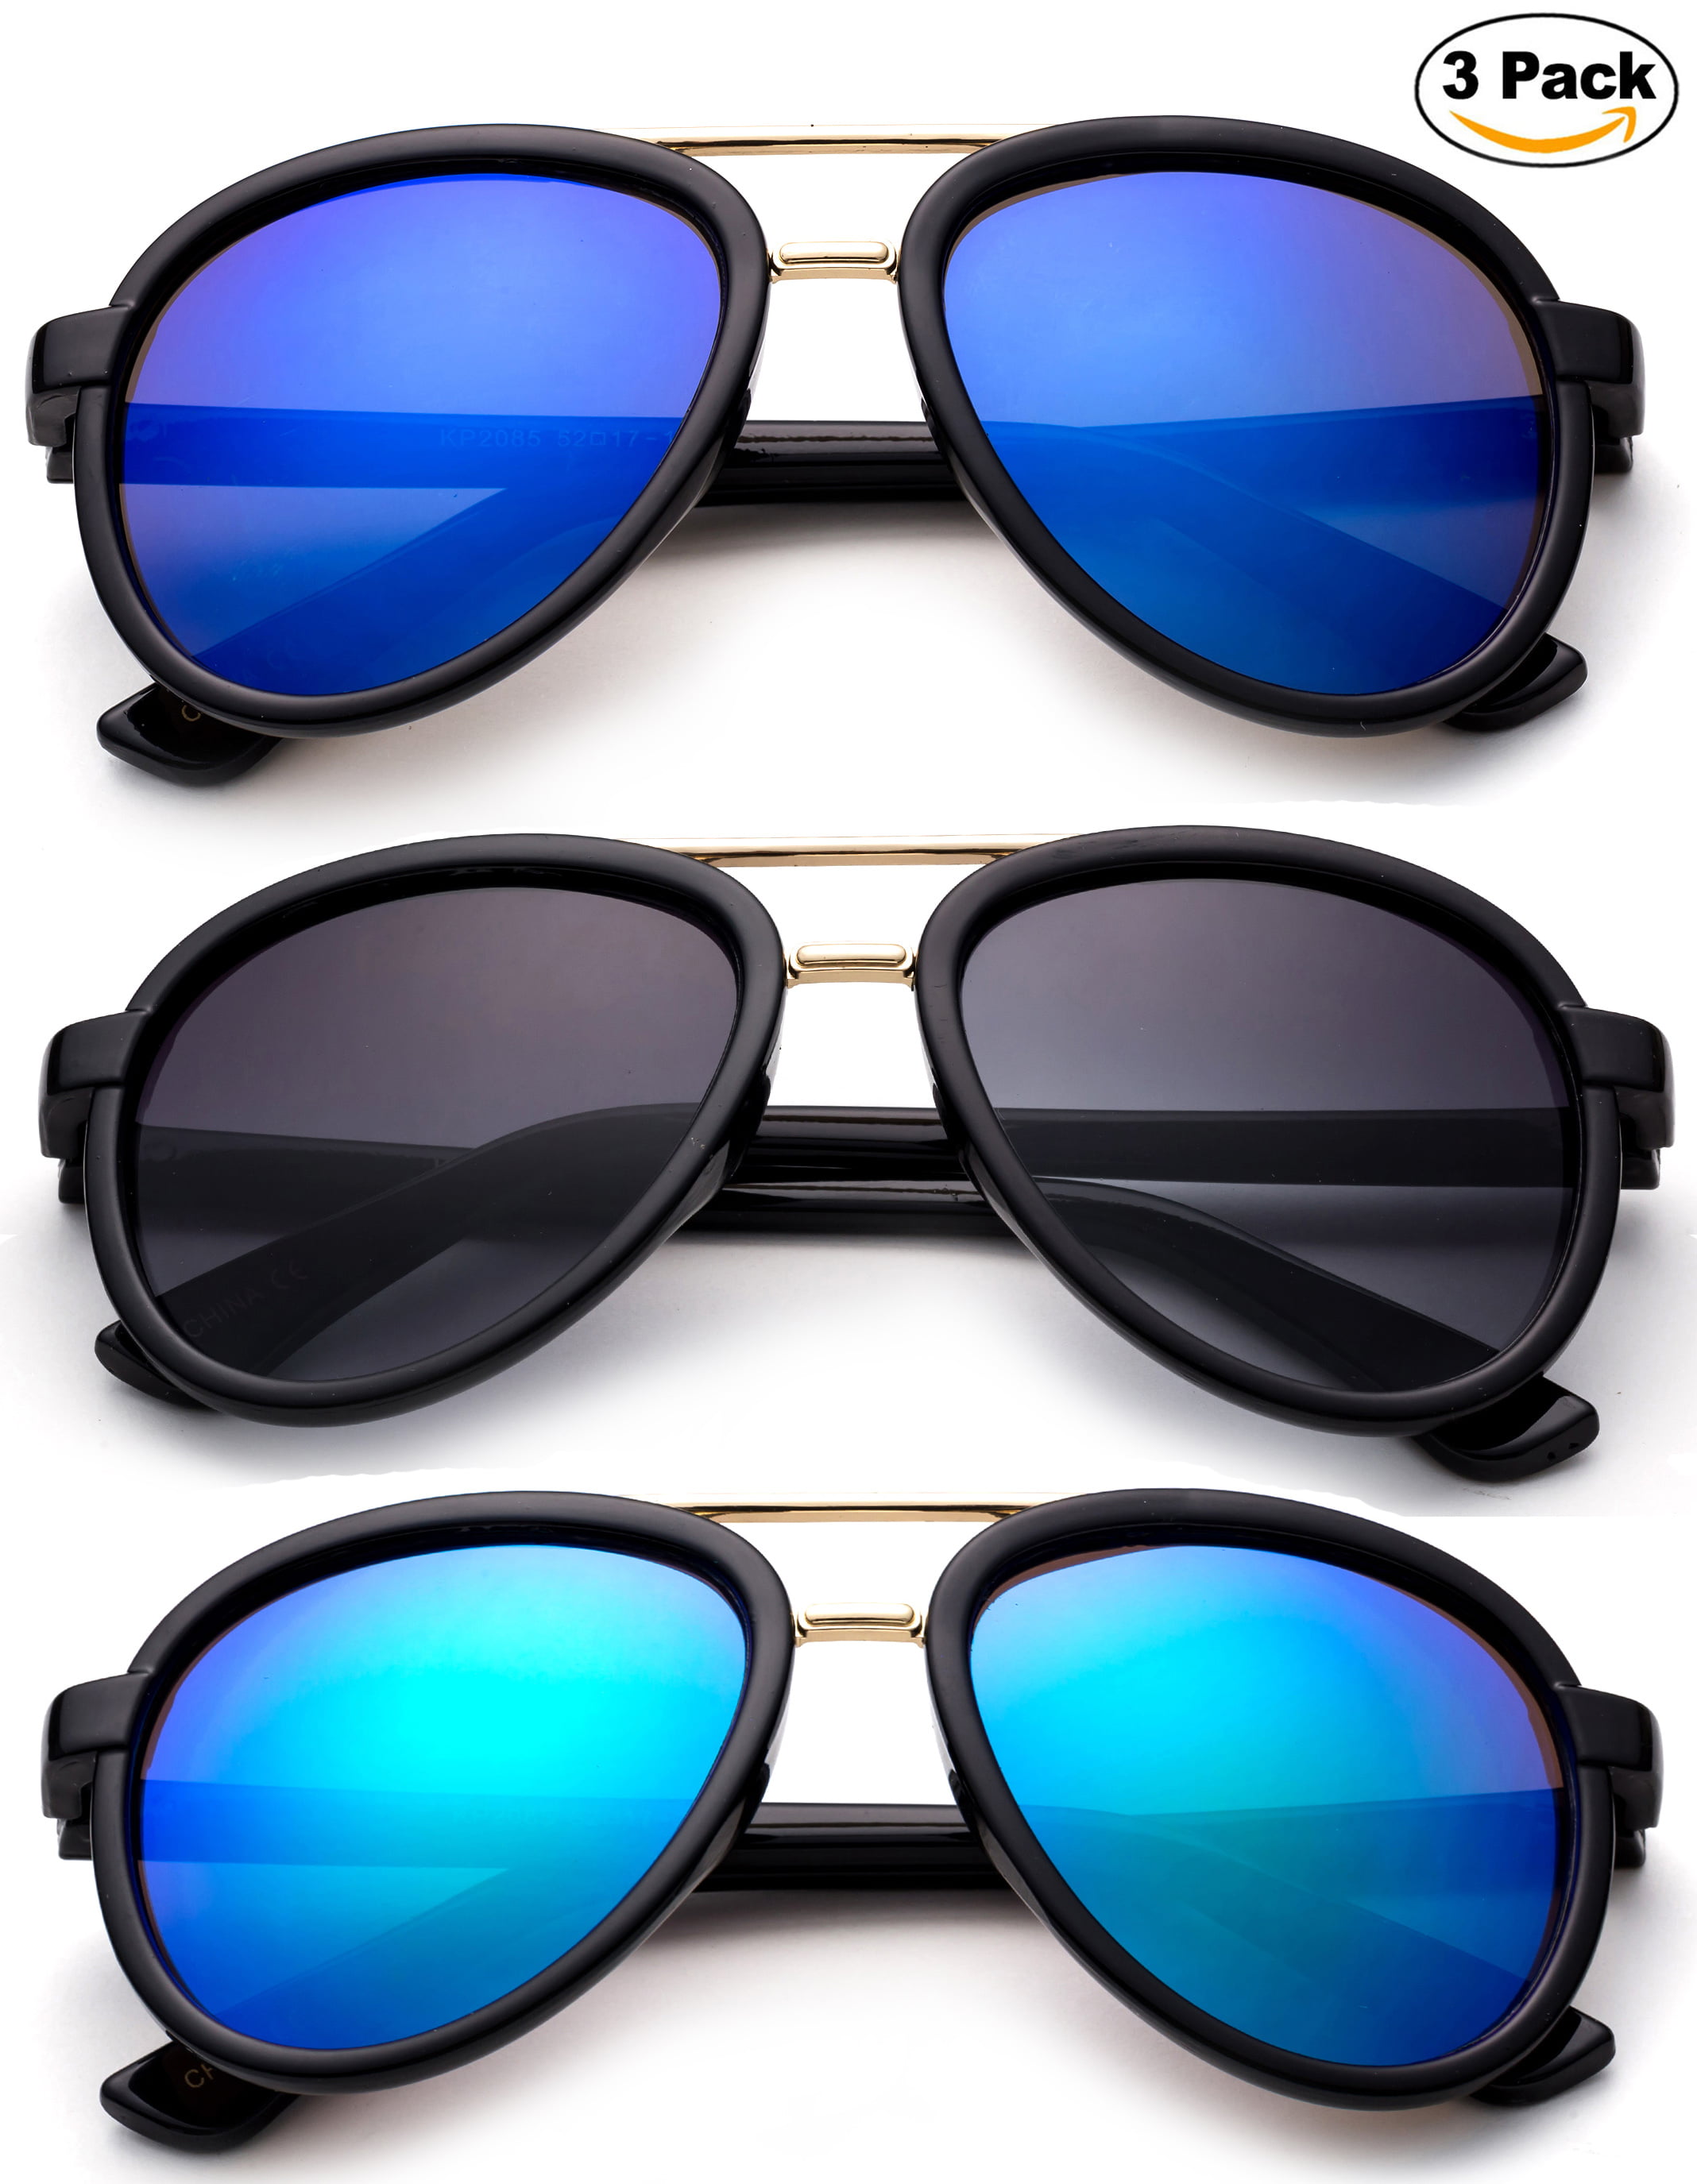 Newbee Fashion 3 Pack -Kids Girls Boys Plastic Aviator Sunglasses with ...